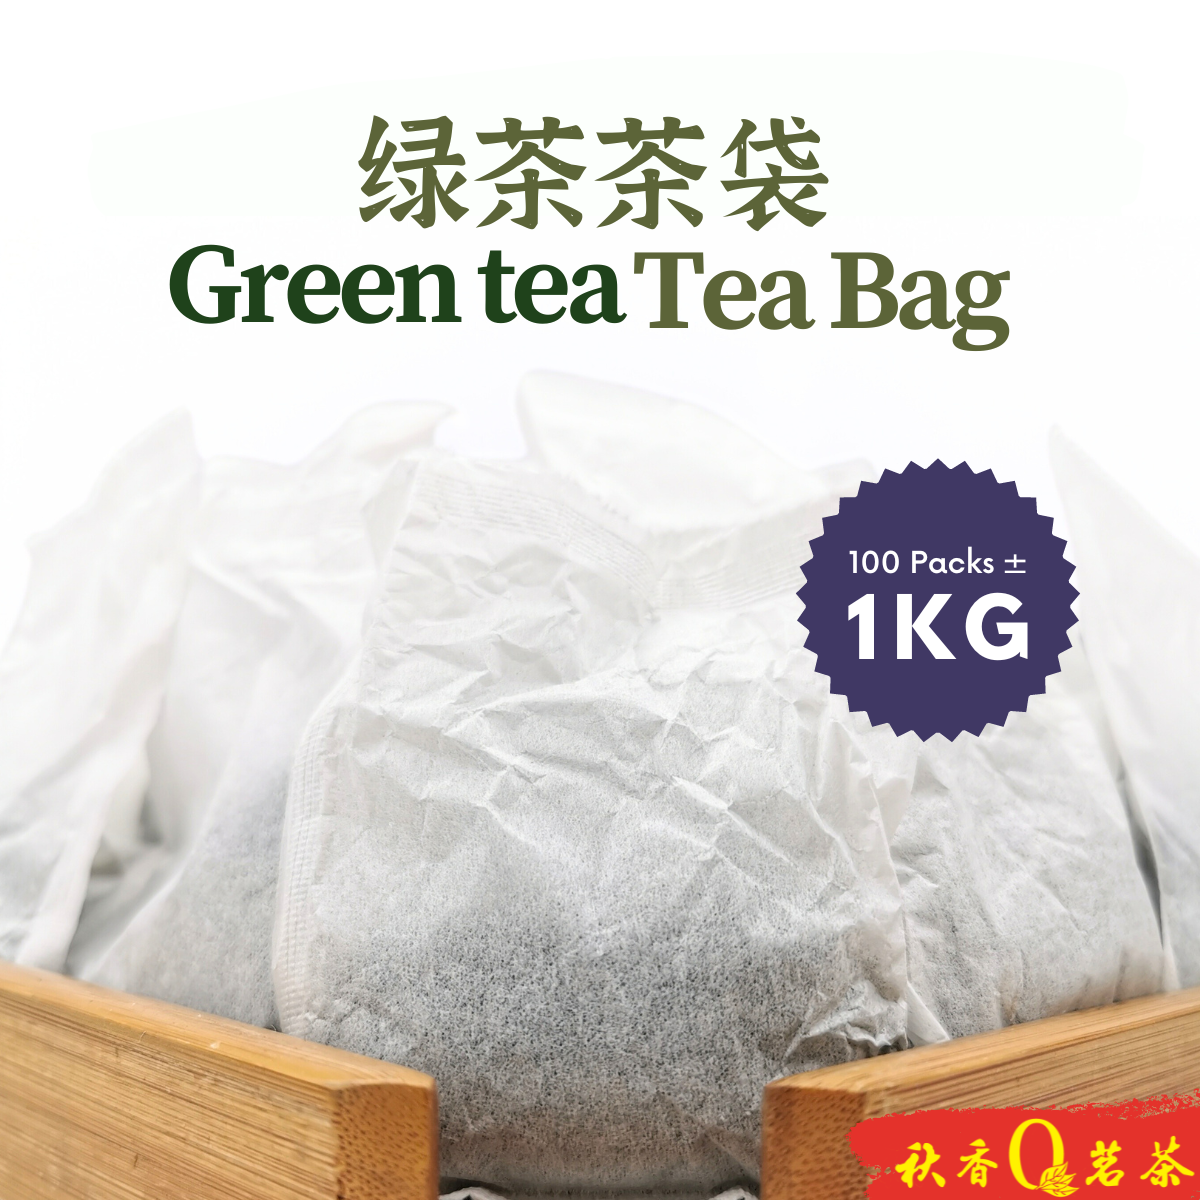 绿茶茶袋 Green Tea Tea Bag 【1kg】|【绿茶 Green tea】